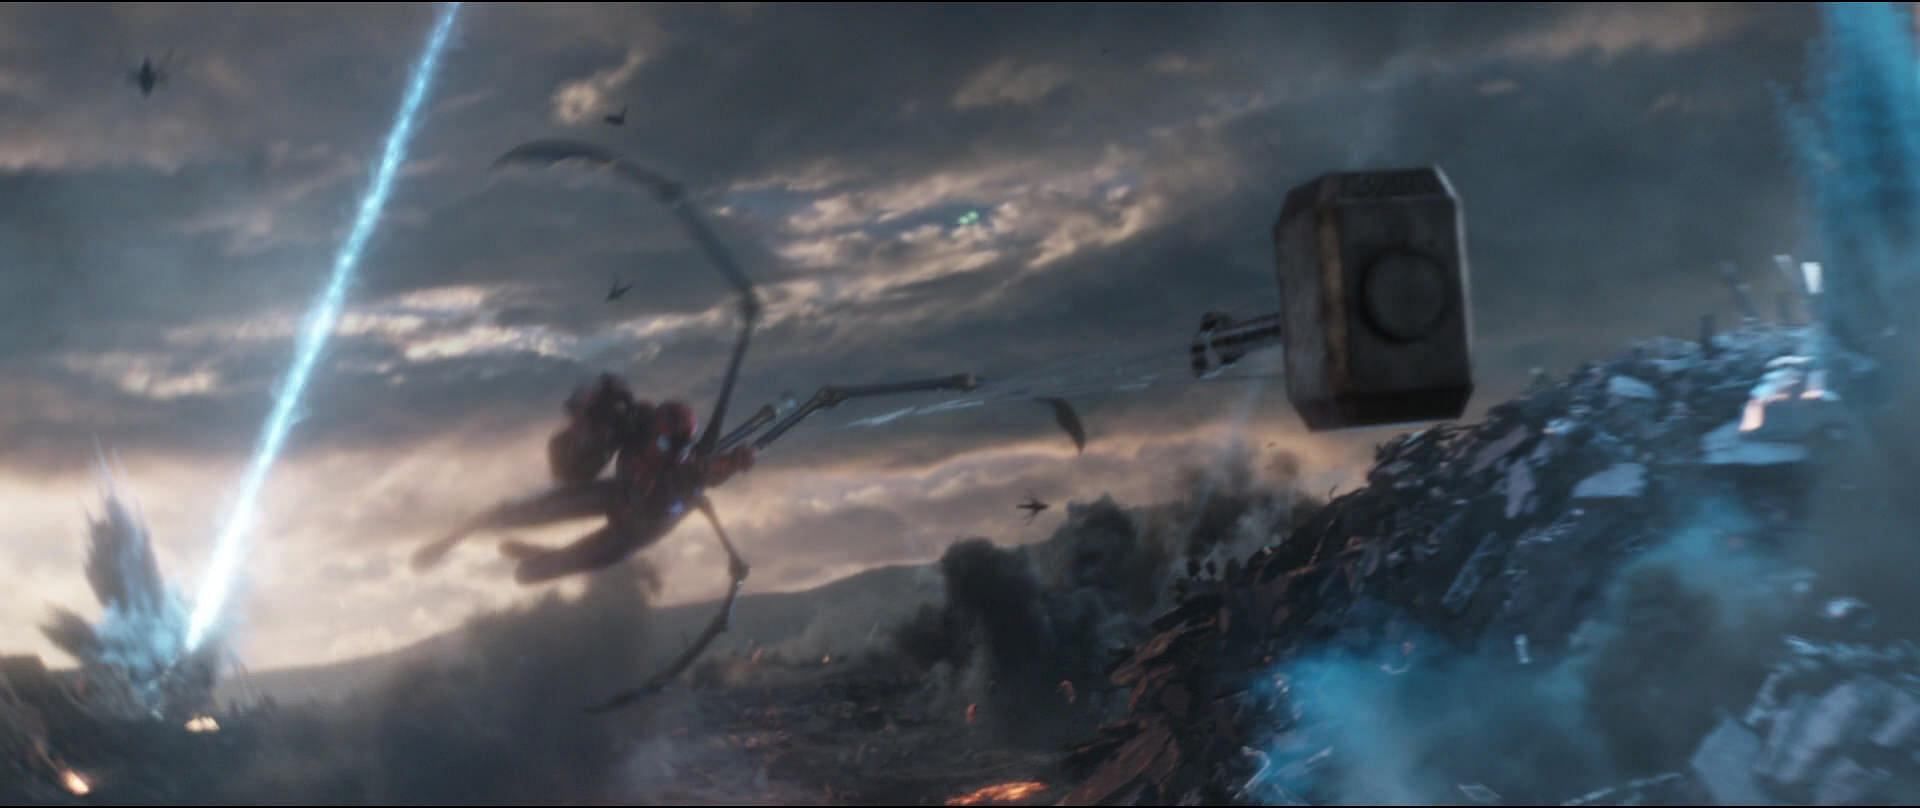 Spider-Man rides the hammer in Avengers: Endgame (Image via Marvel)